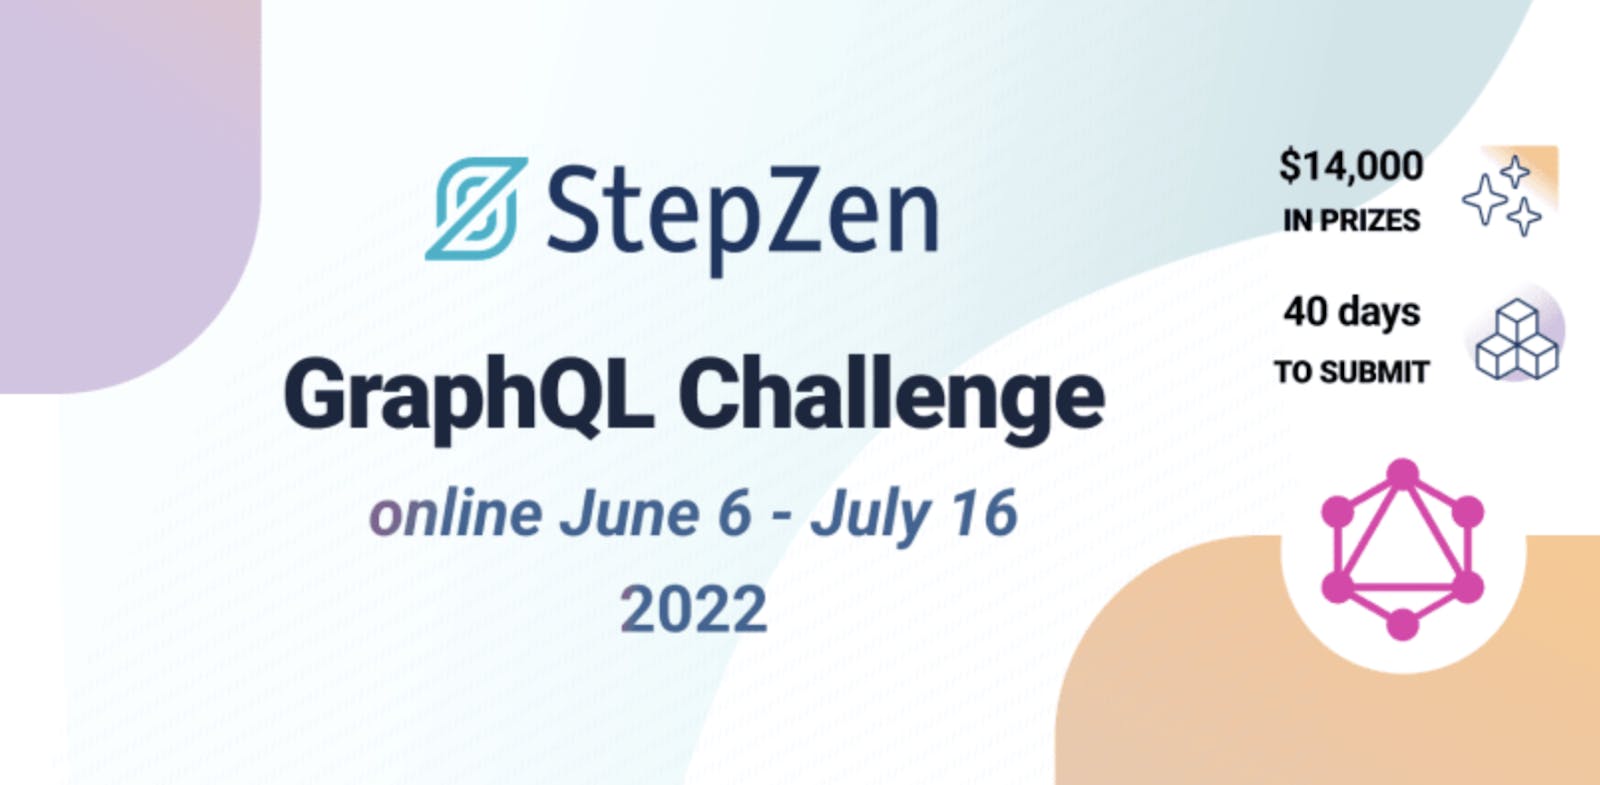 Announcing the StepZen GraphQL Challenge Hackathon